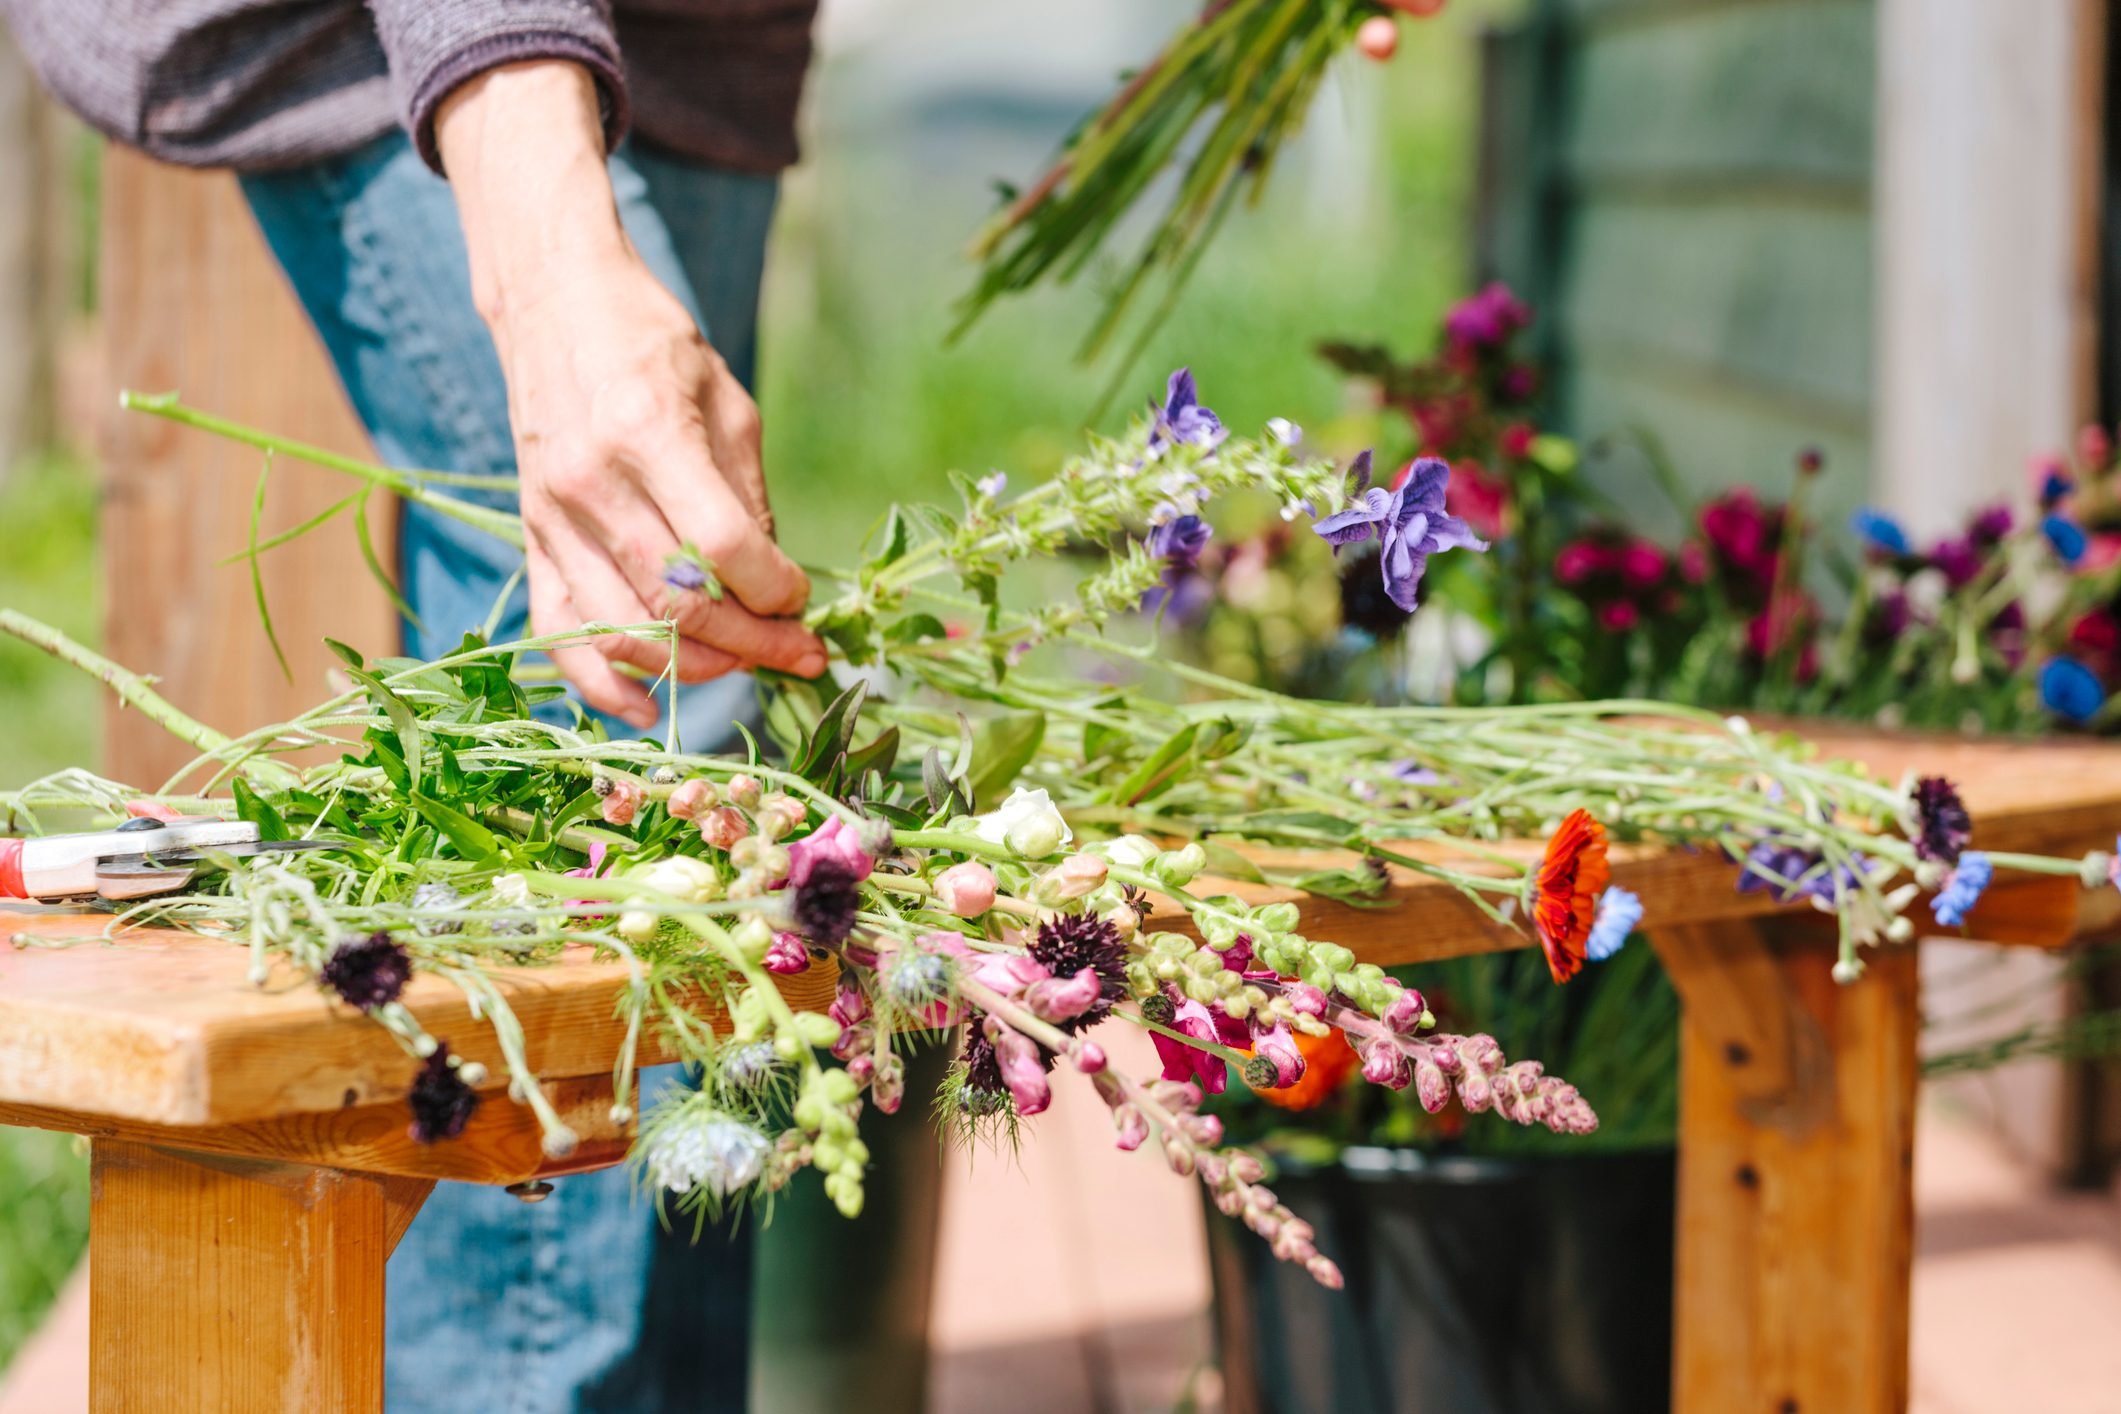 How to Grow a Cut Flower Garden